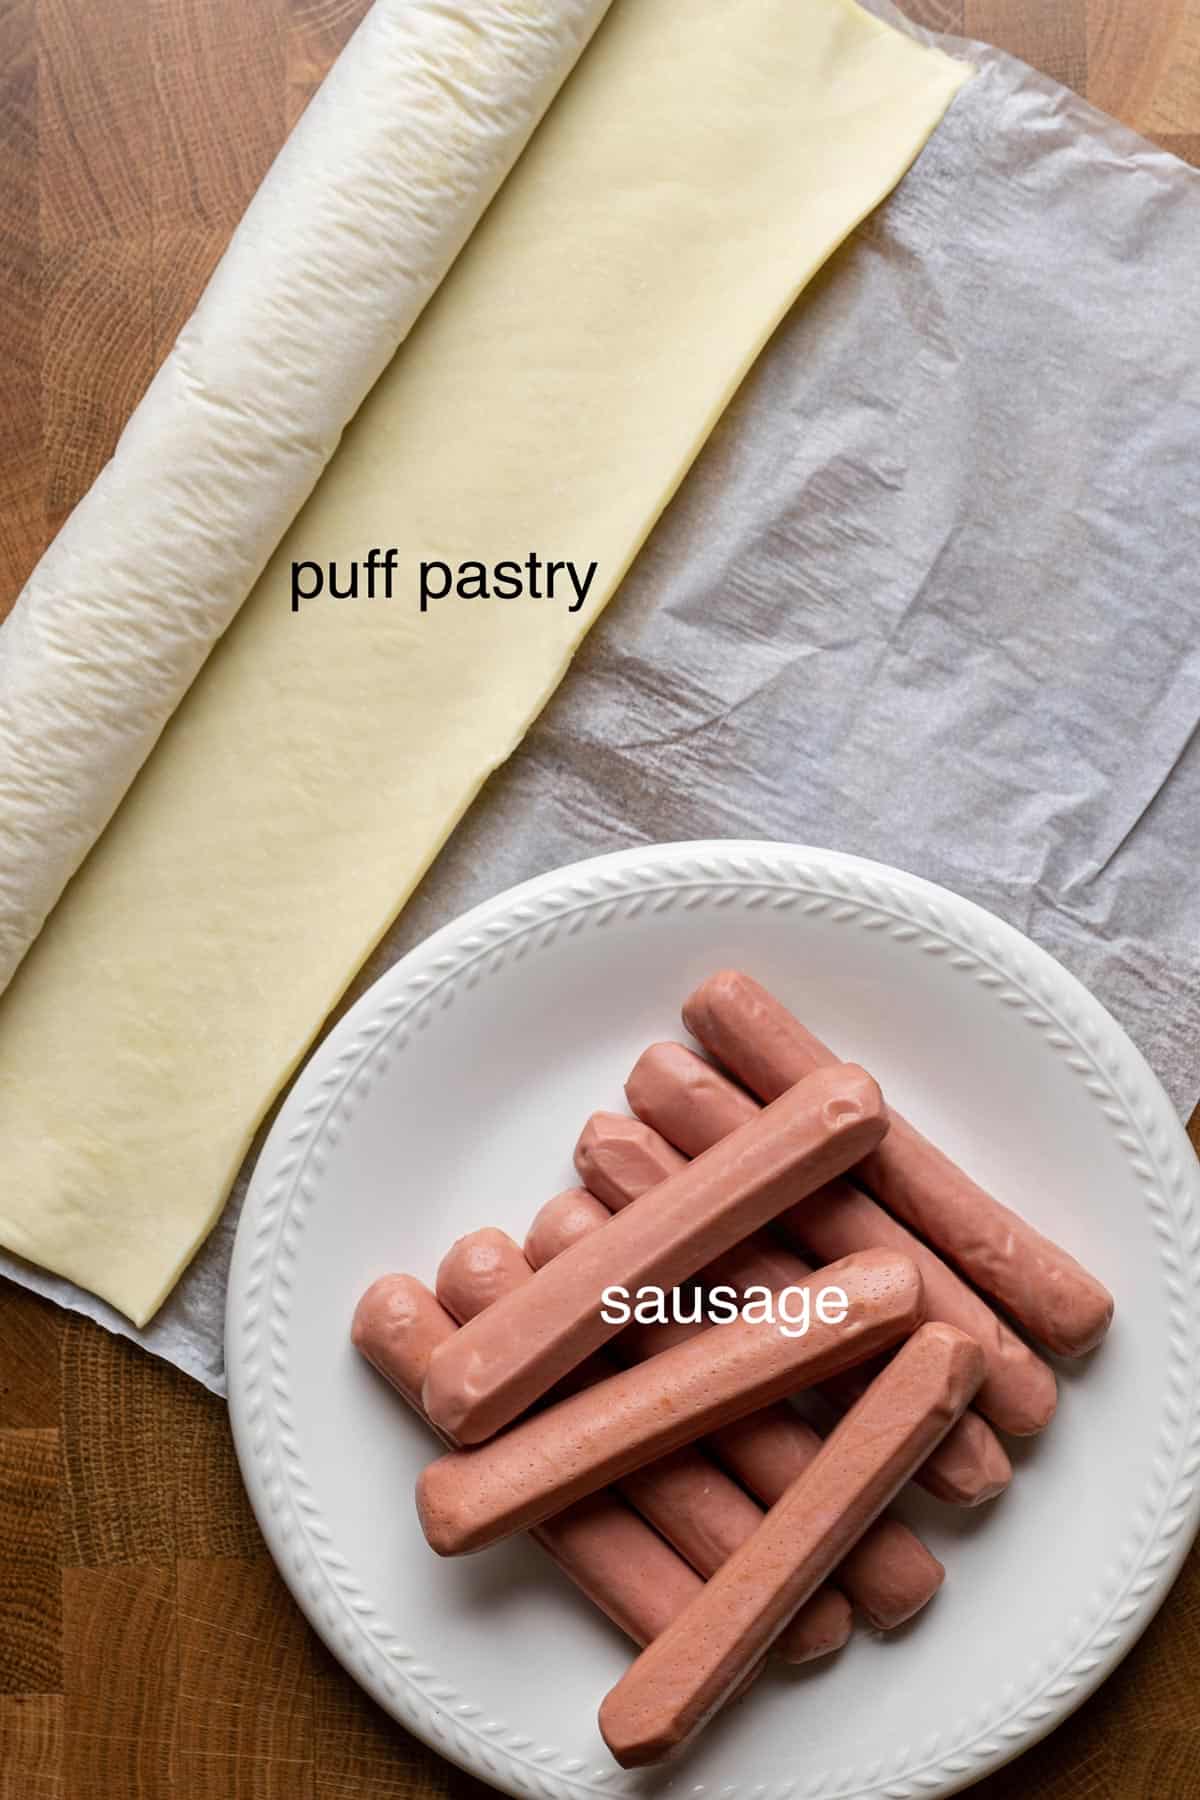 Ingredients to make hot dog mummies.